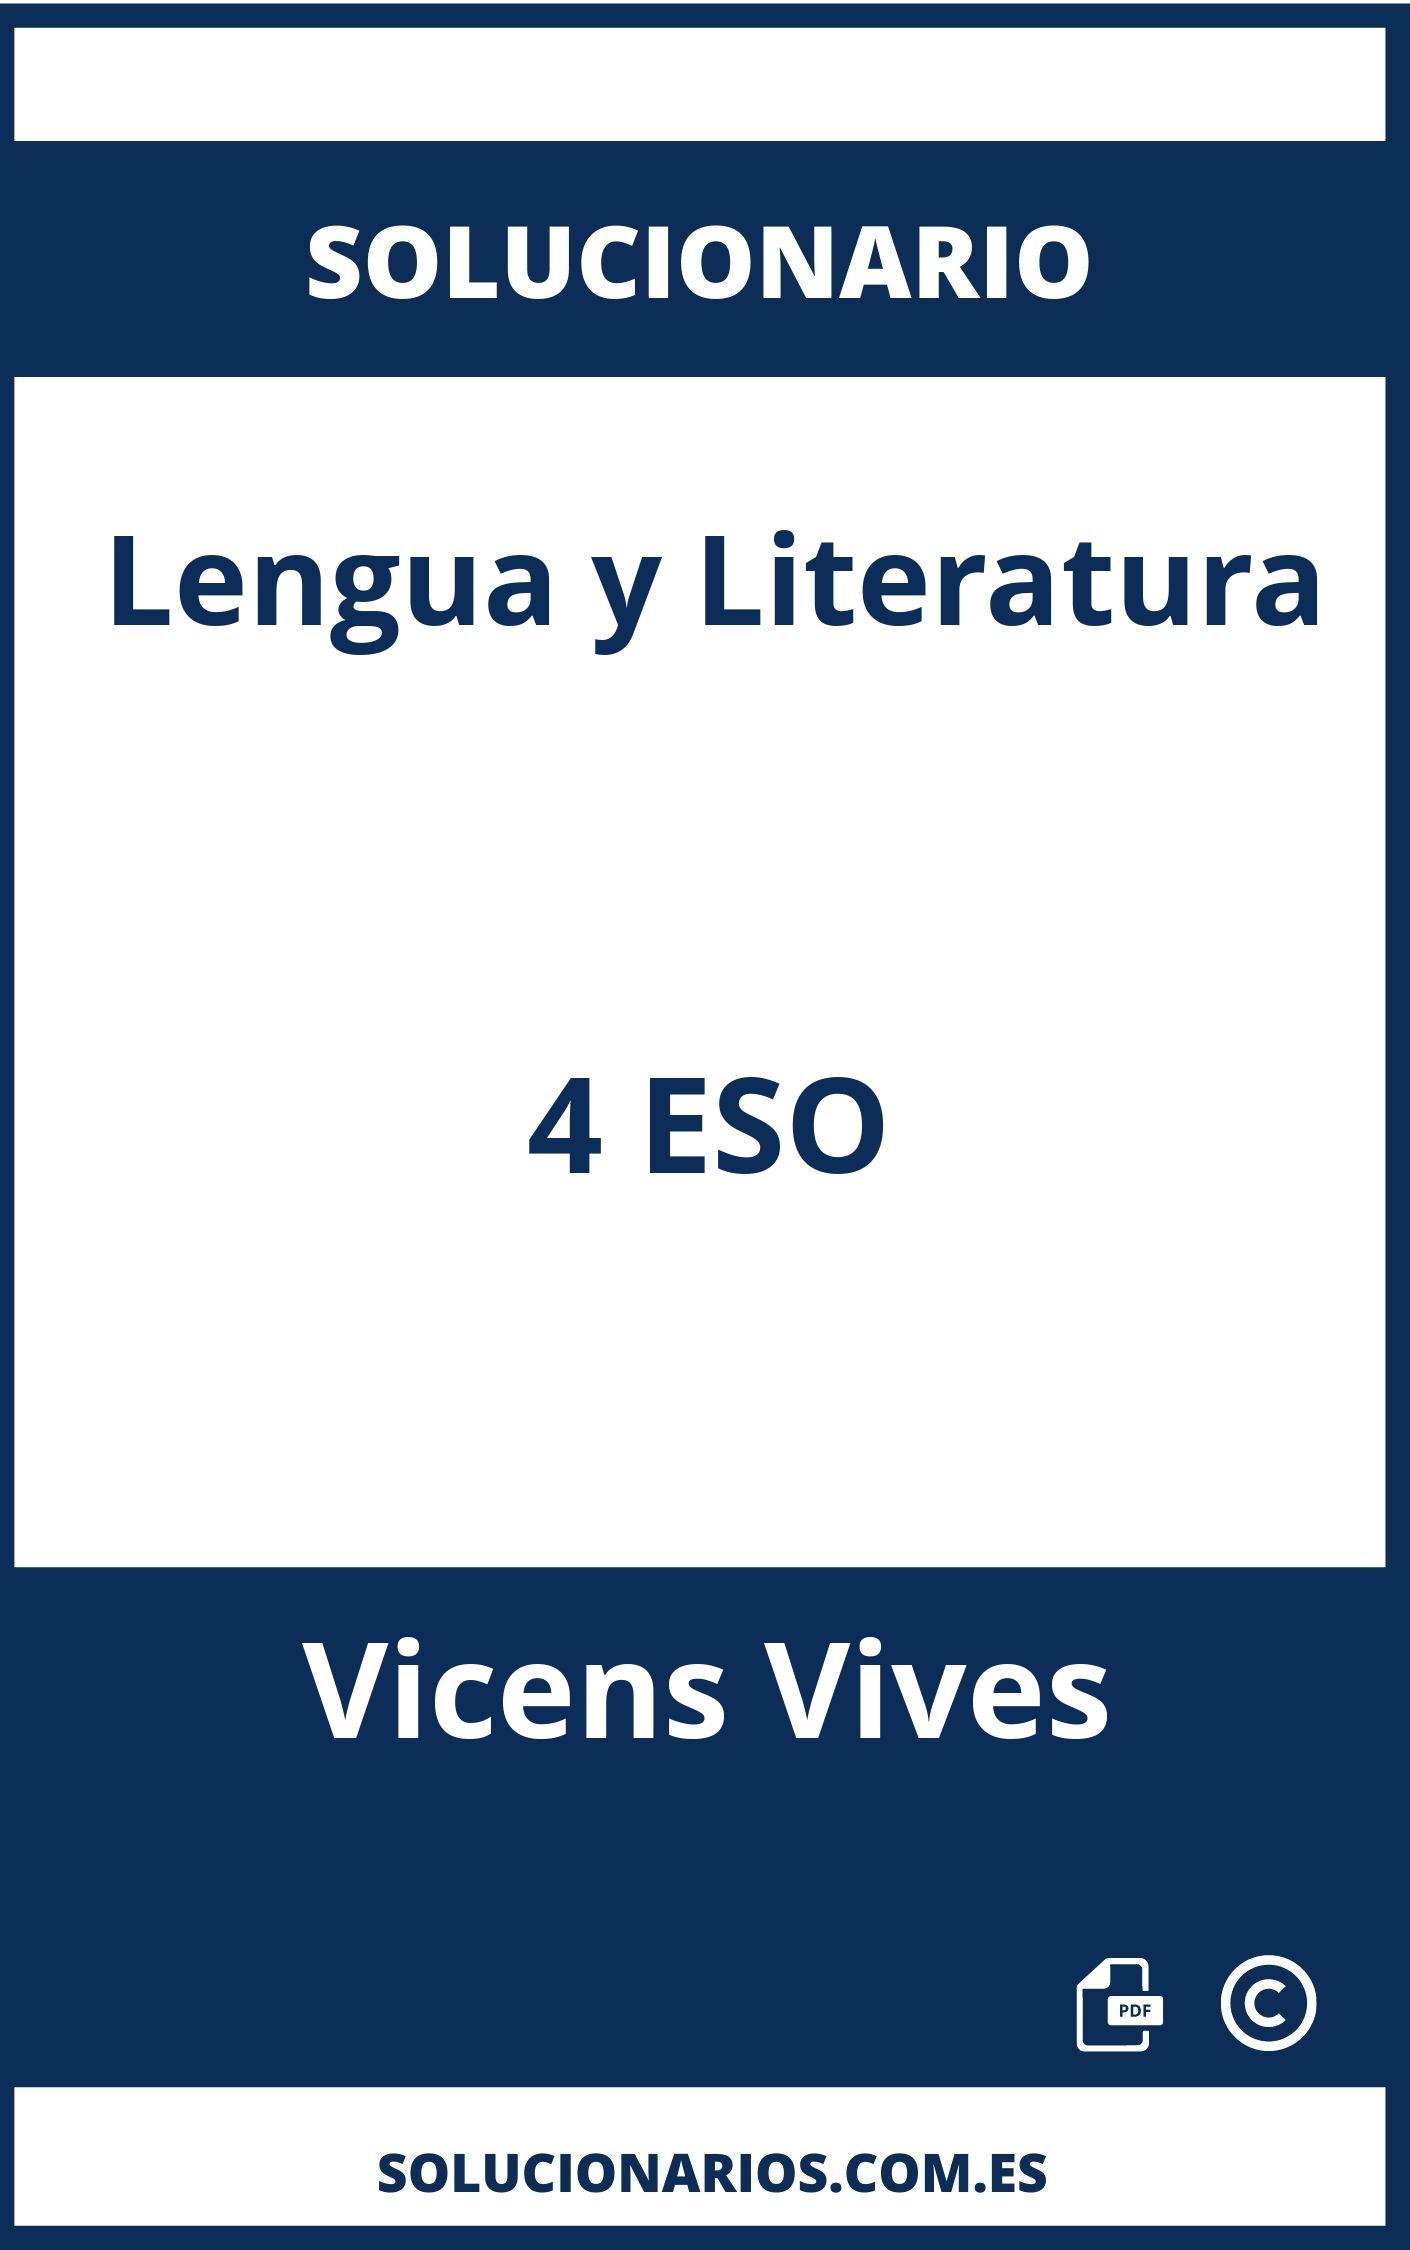 Solucionario Lengua y Literatura 4 ESO Vicens Vives